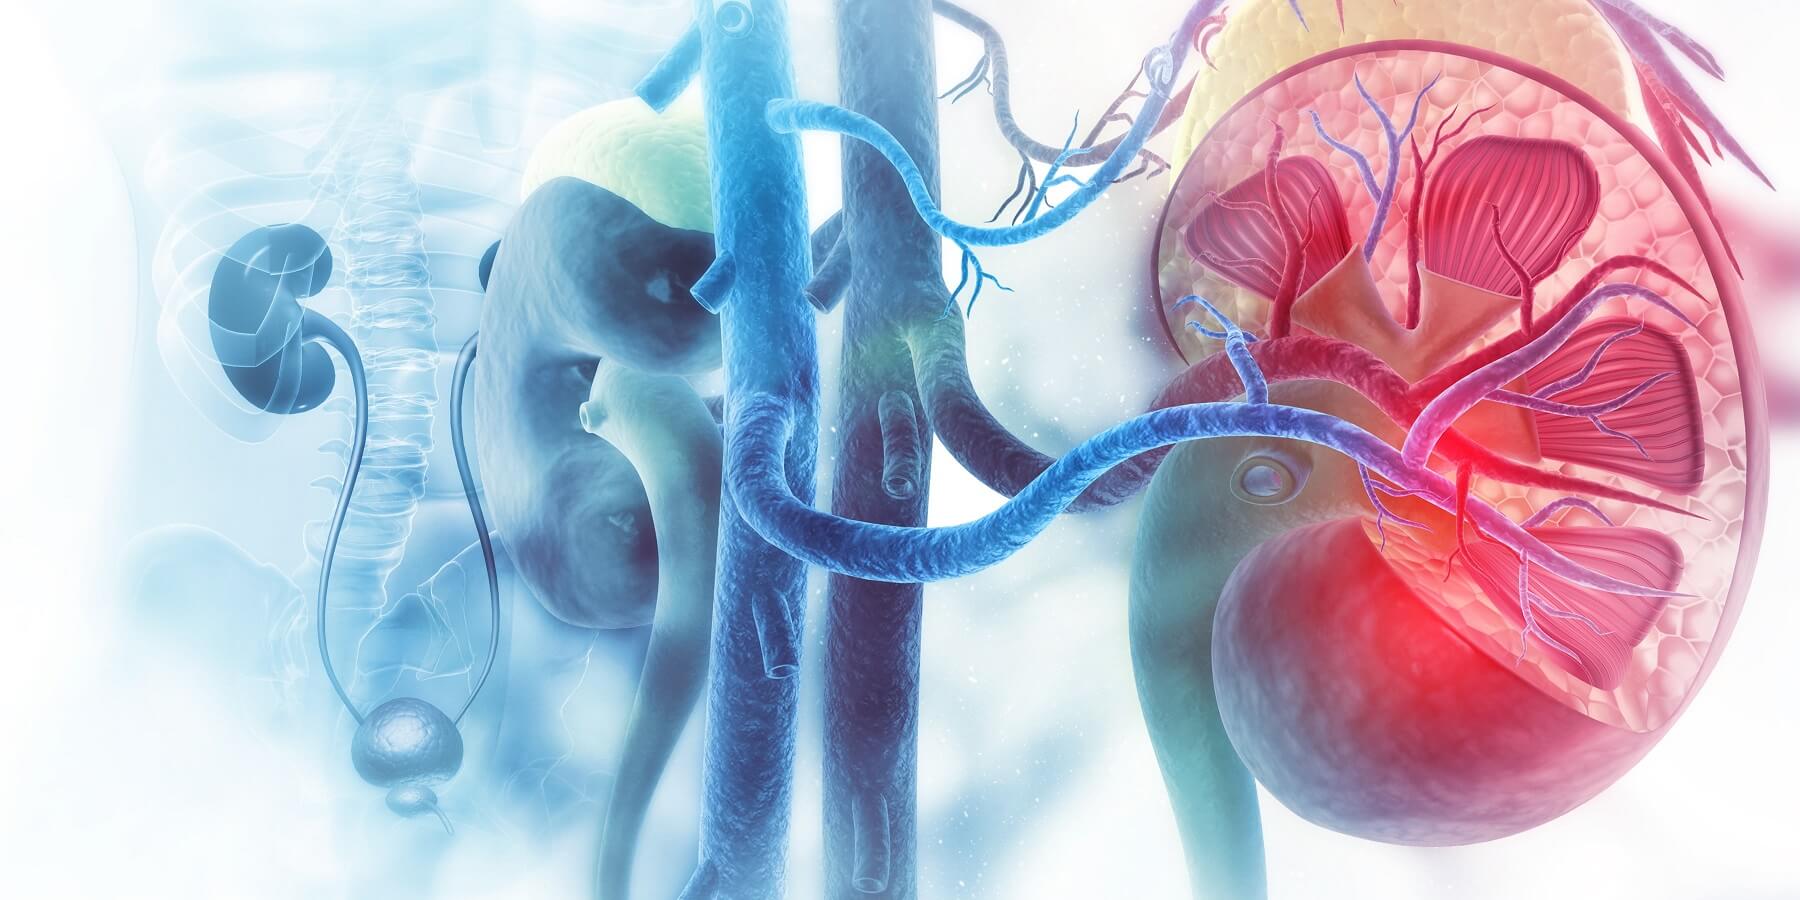 Anatomische Darstellung einer menschlichen Niere